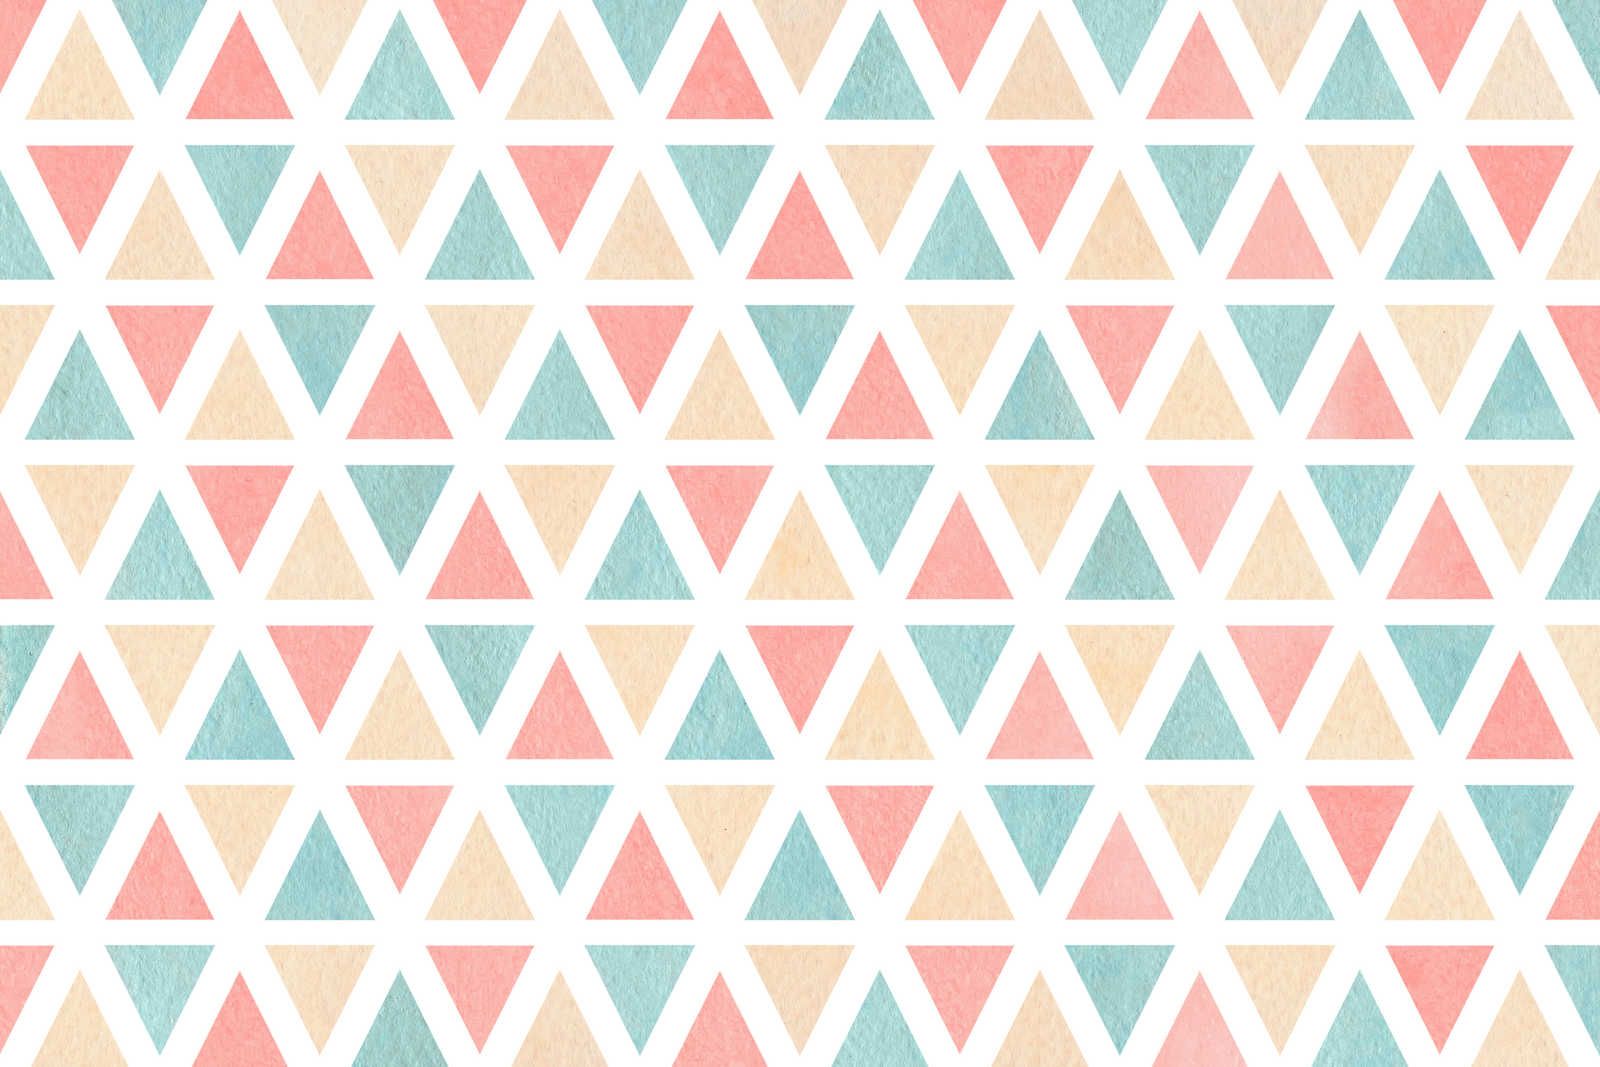             Grafisch canvaspatroon met kleurrijke driehoeken - 90 cm x 60 cm
        